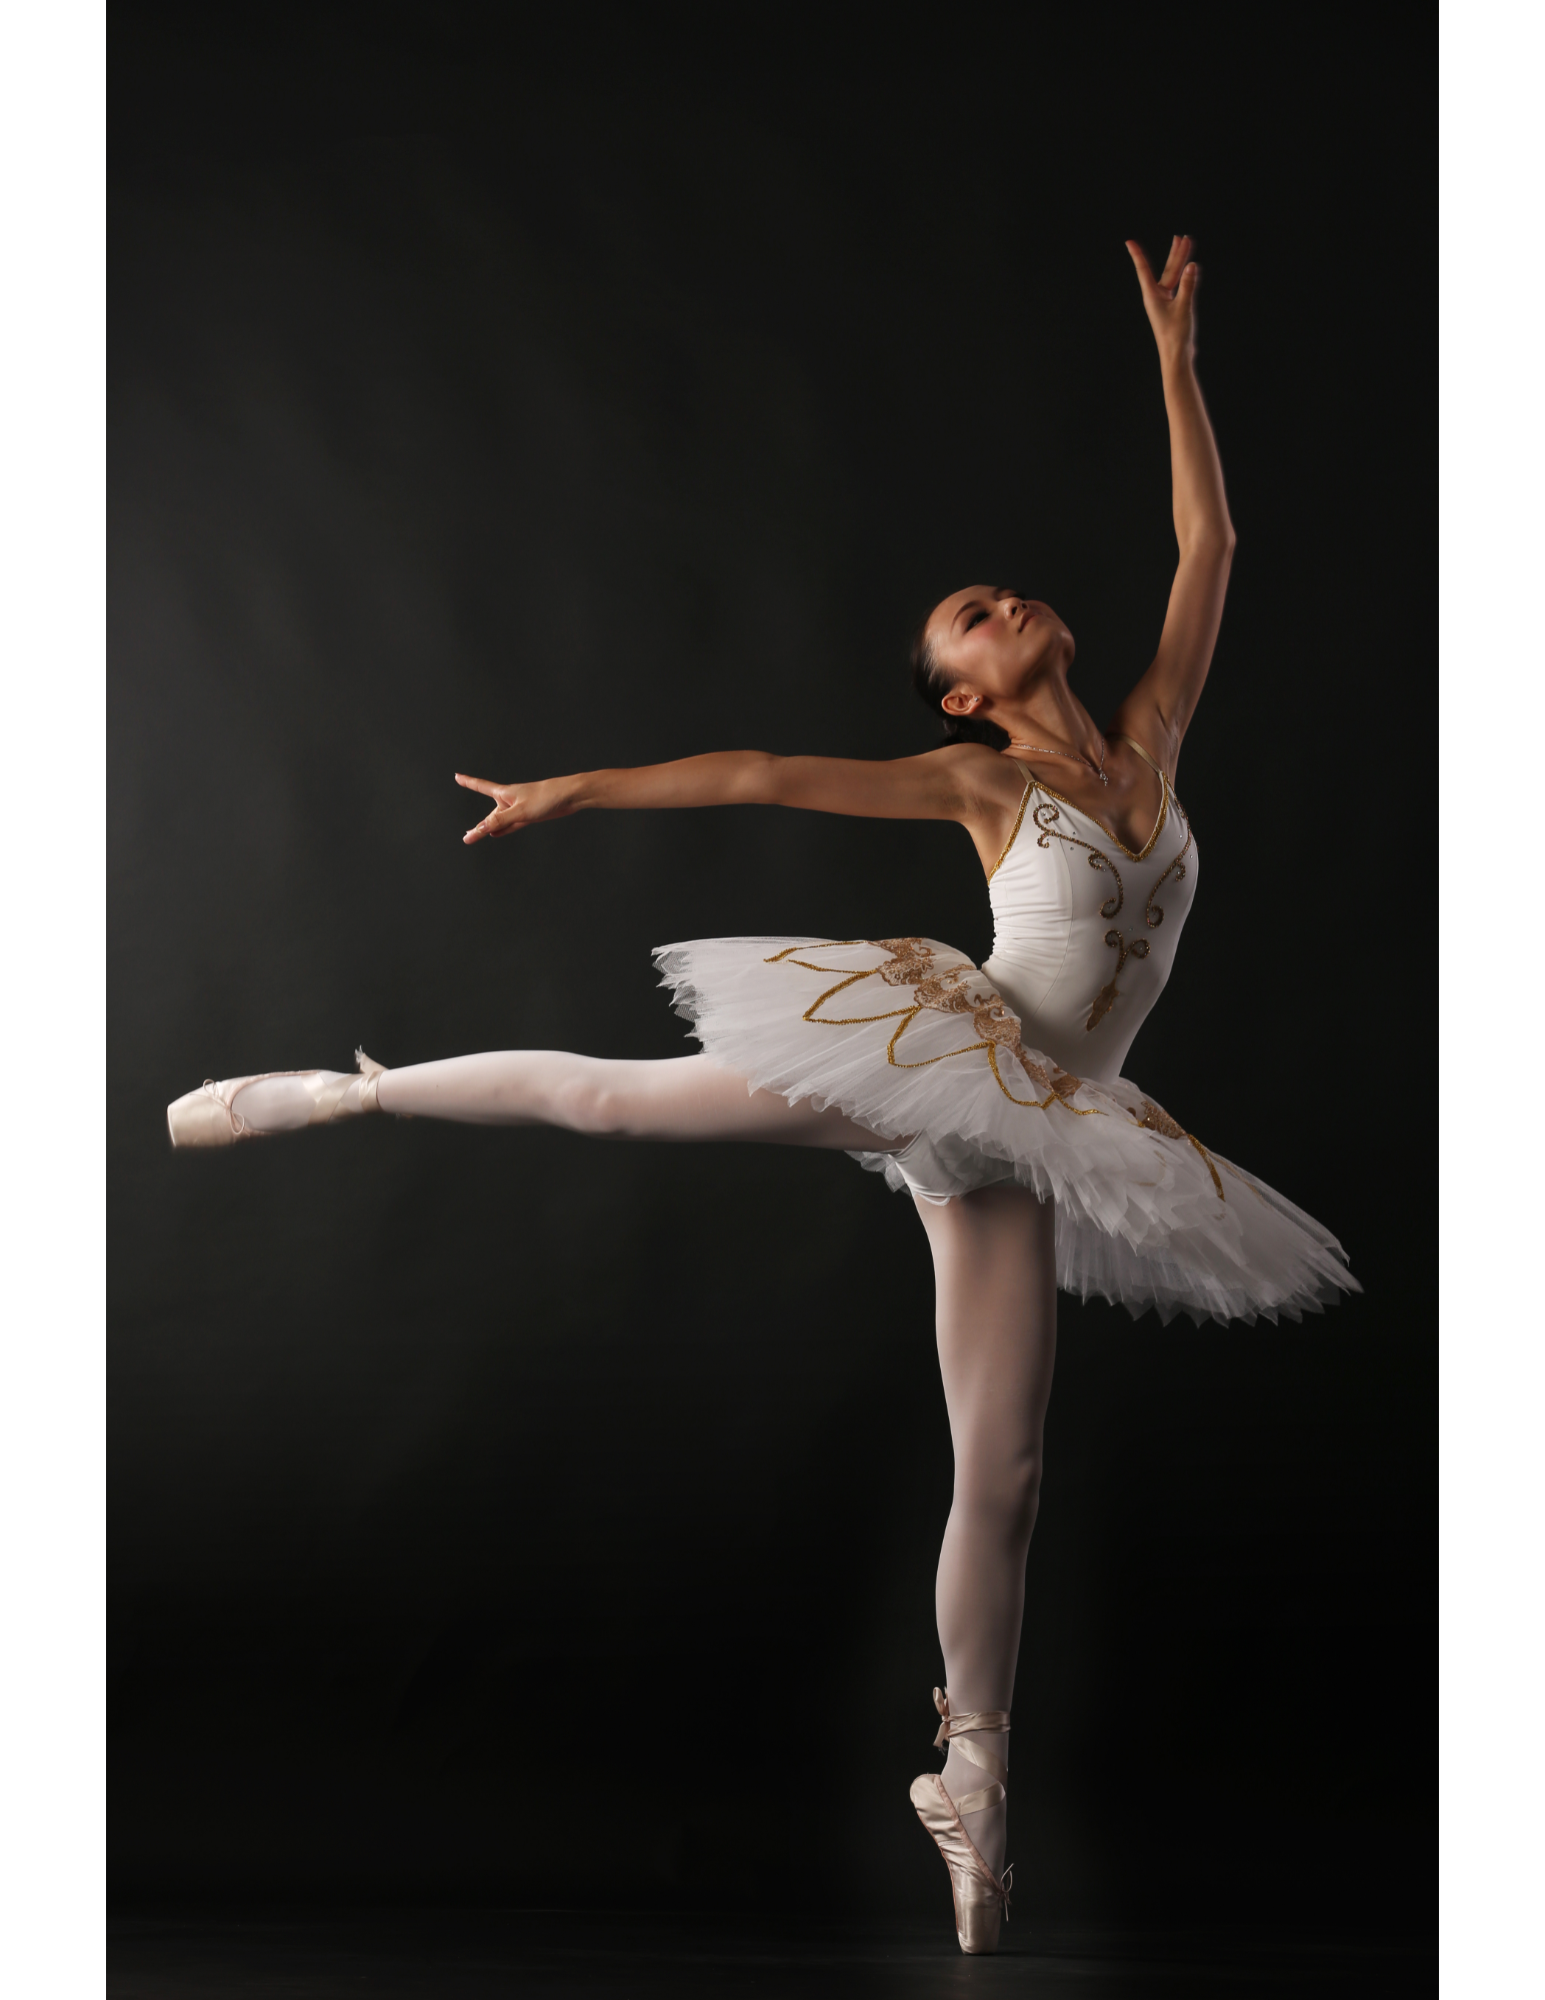 ballerina dancing in front of black background